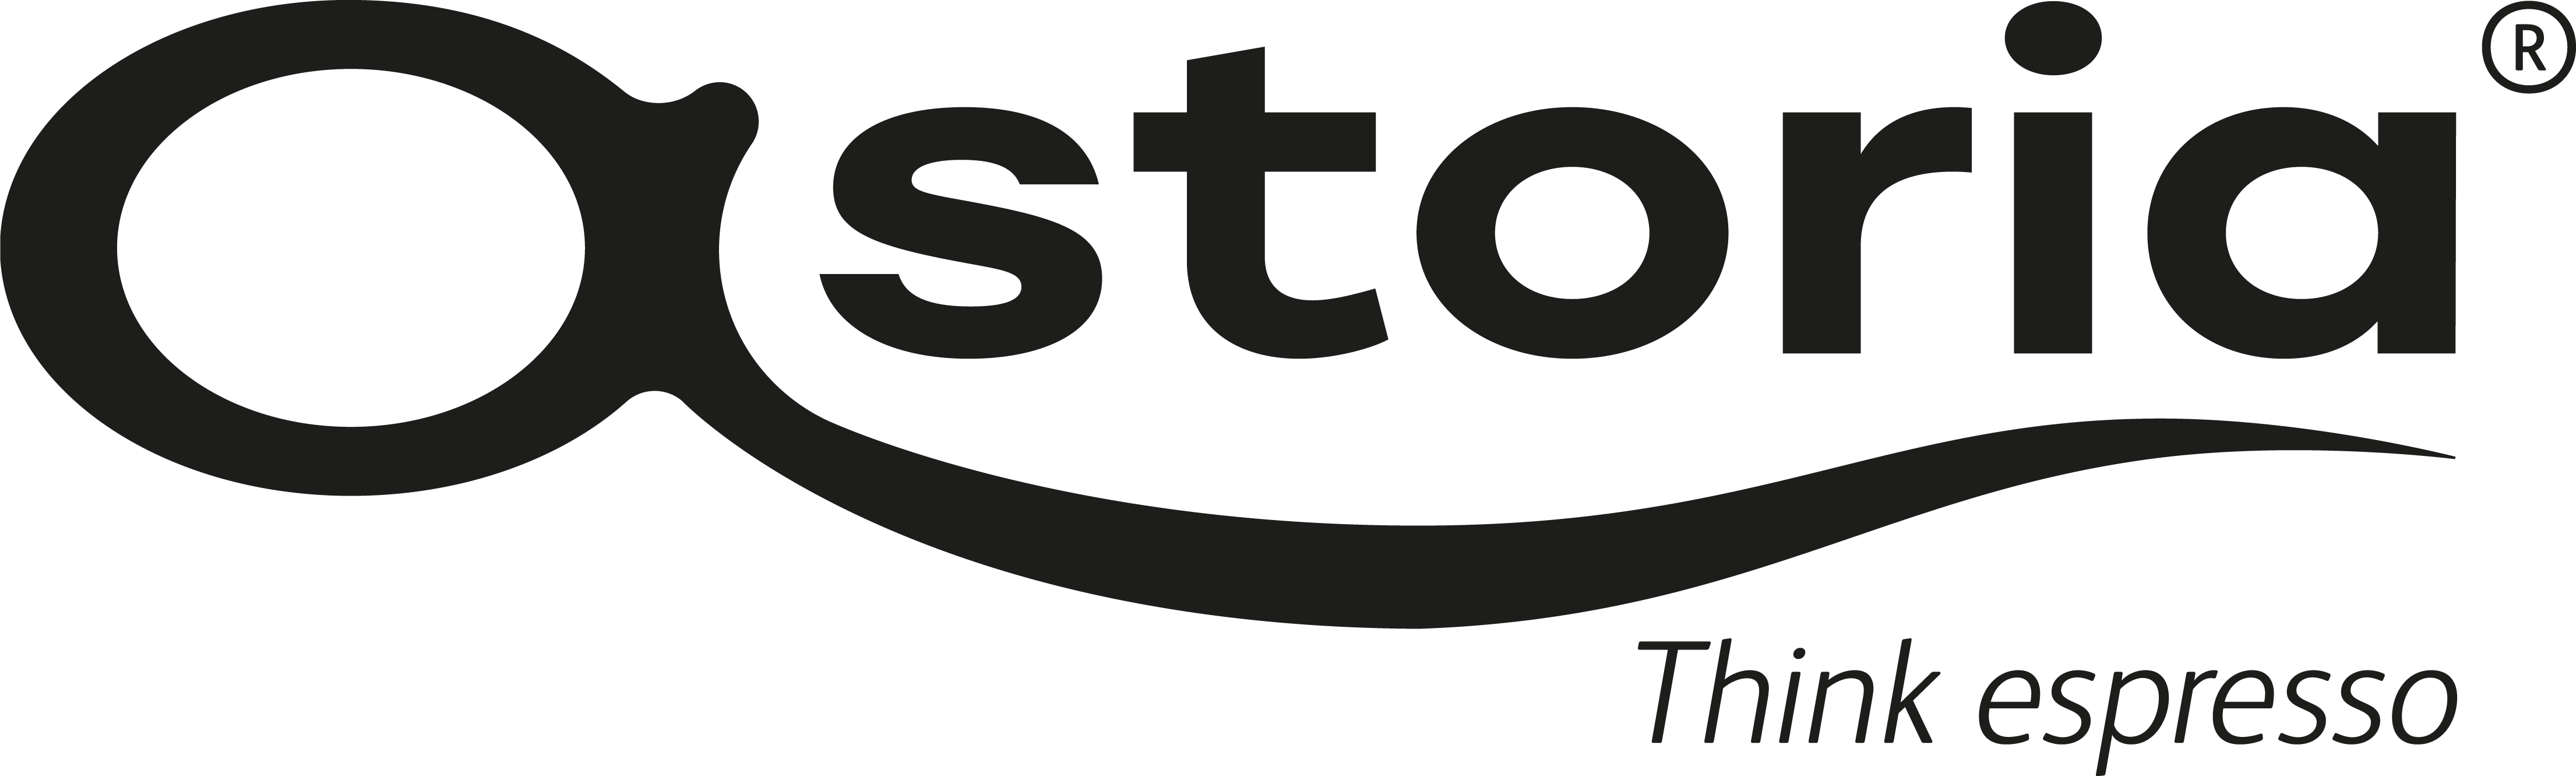 Hersteller Astoria